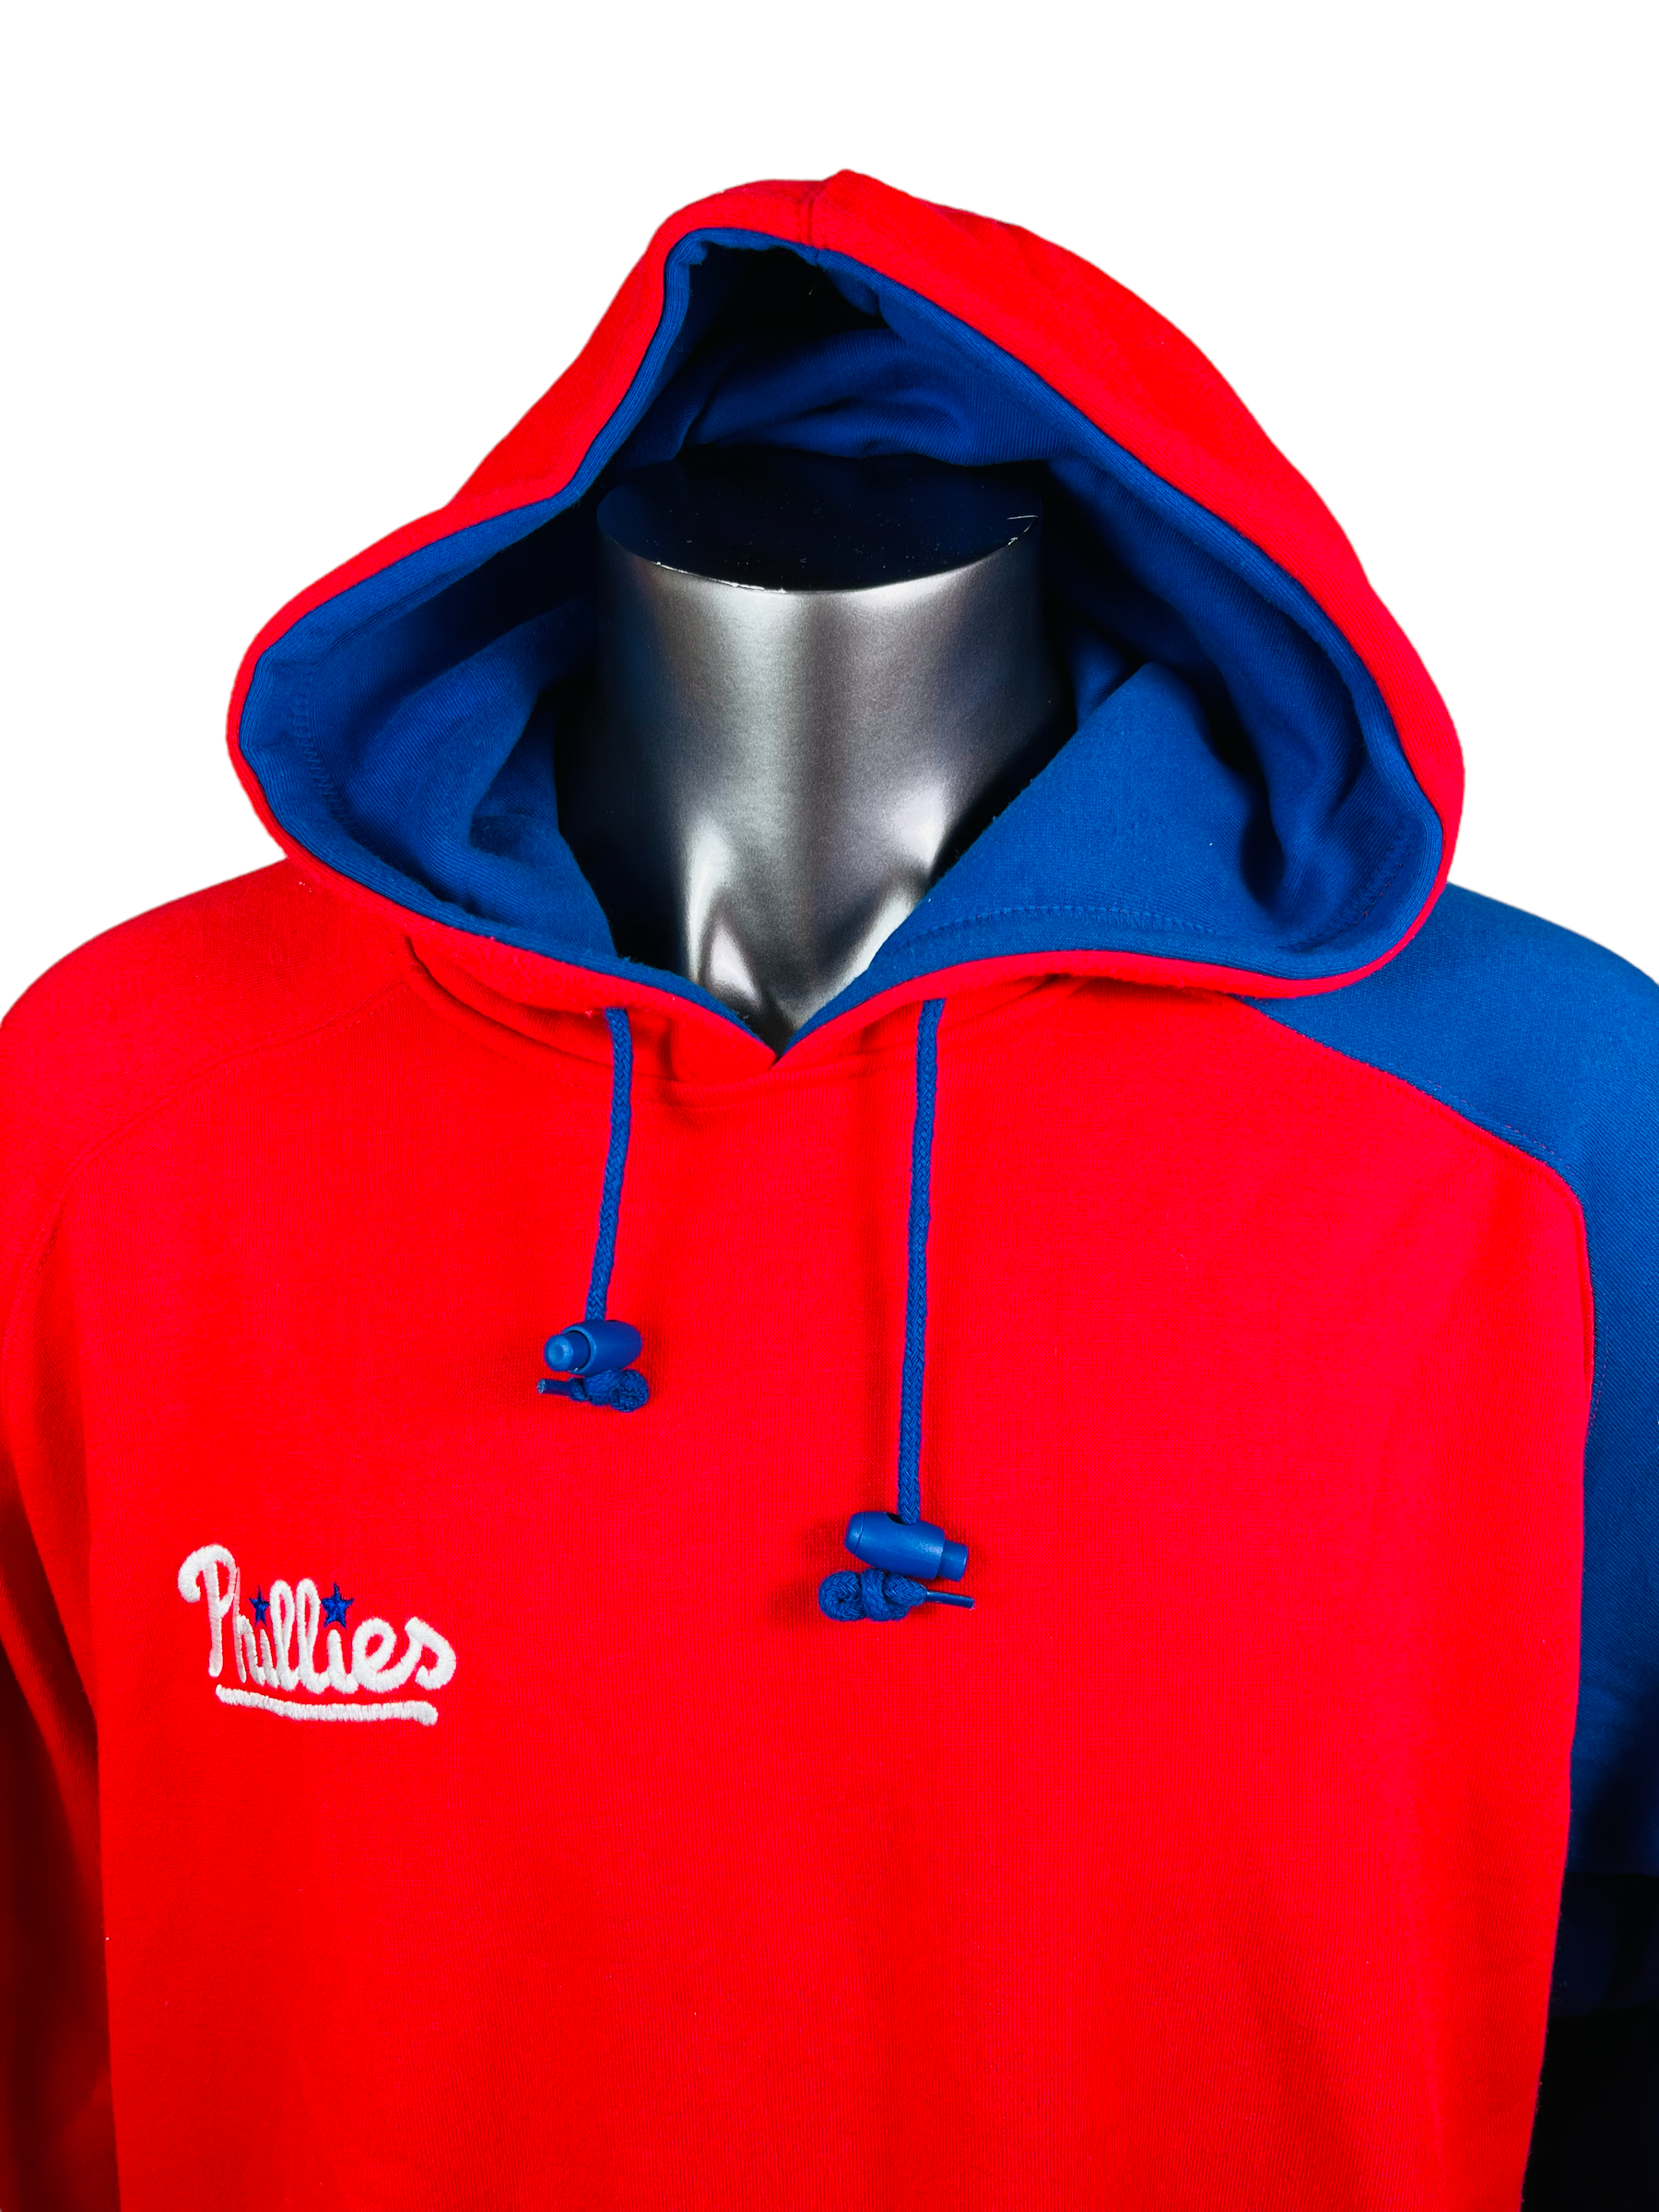 phillies zip up hoodie